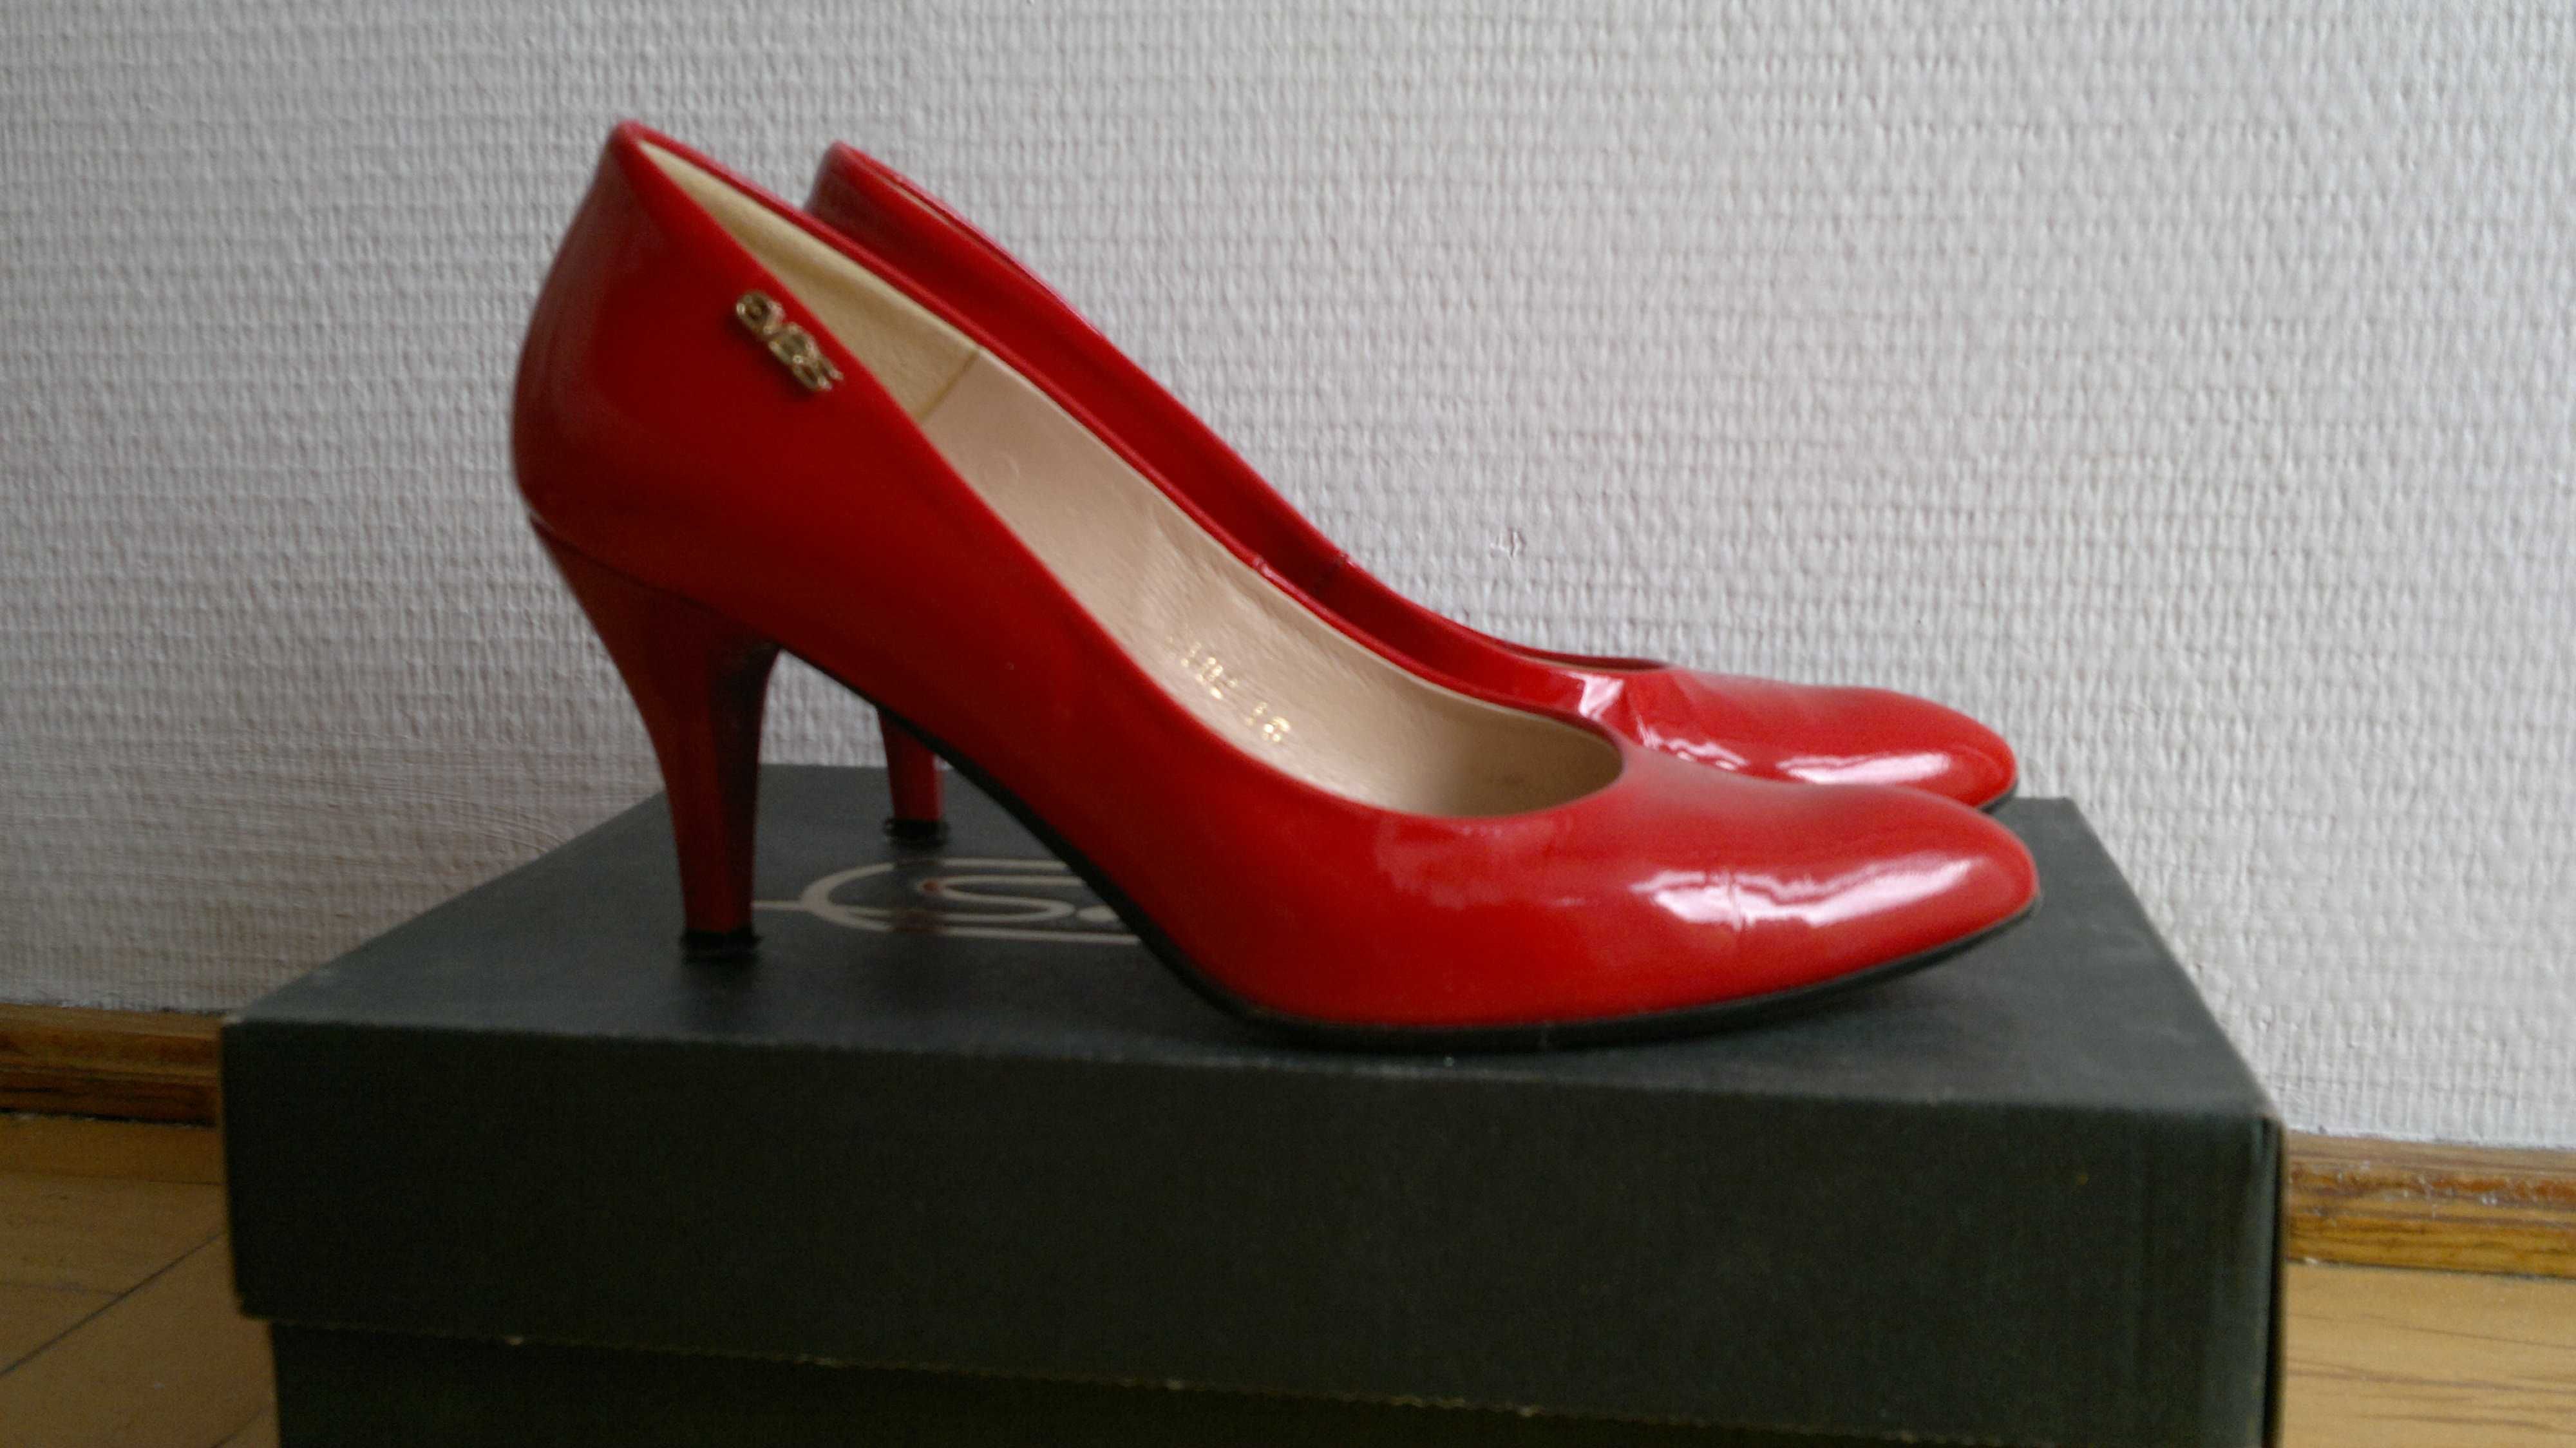 Skórzane czerwone lakierowane buty 37 4 obcas 7 cm wygodne zakryte